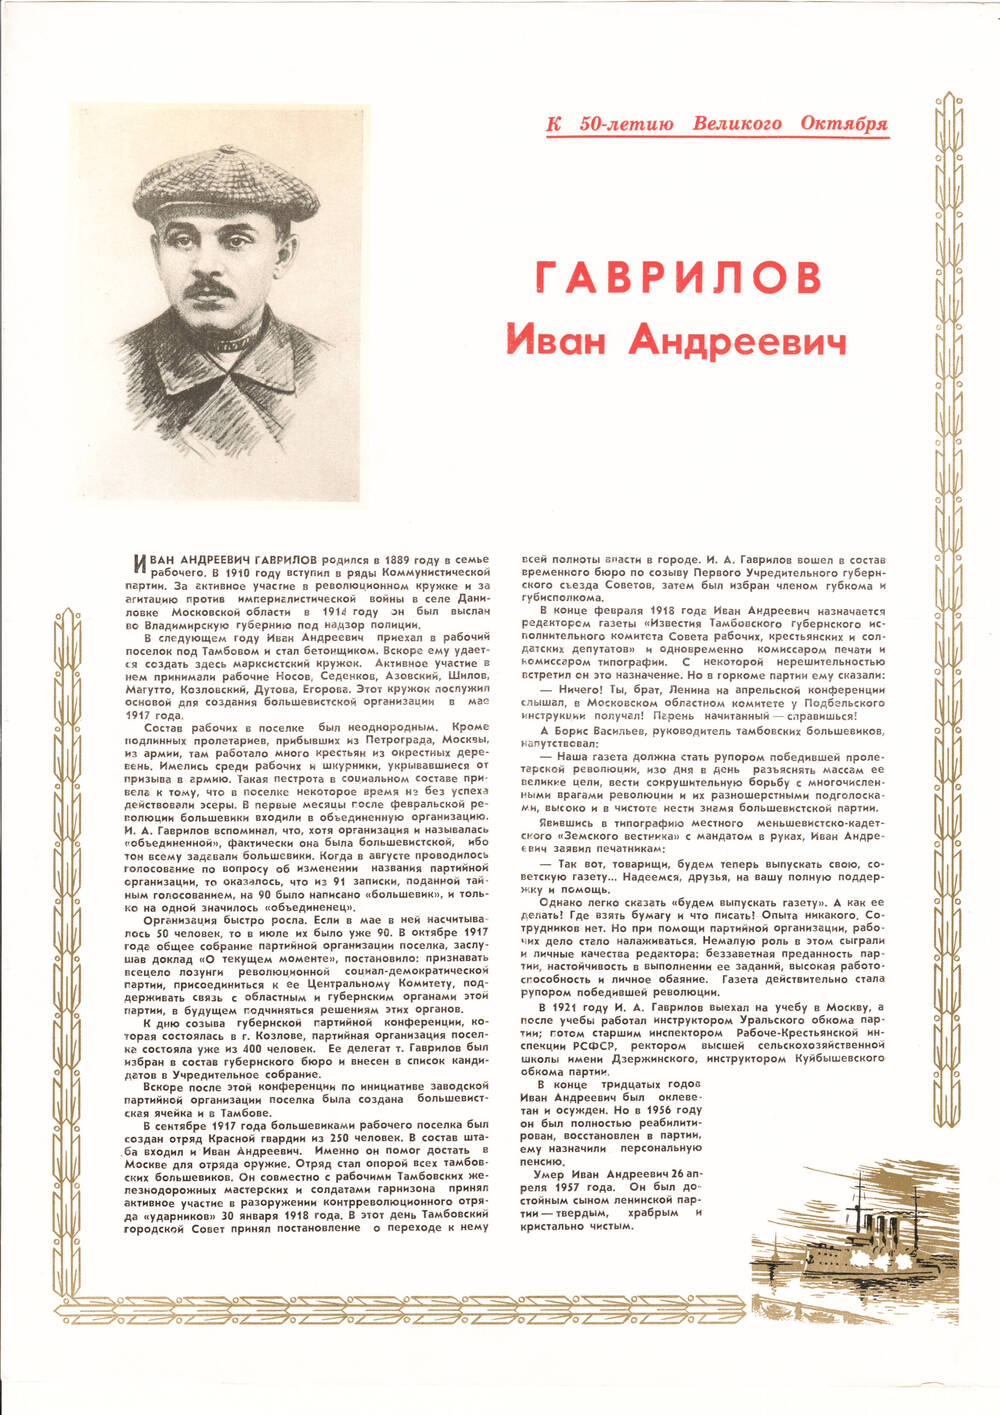 Листовка о Гаврилове Иване Андреевиче